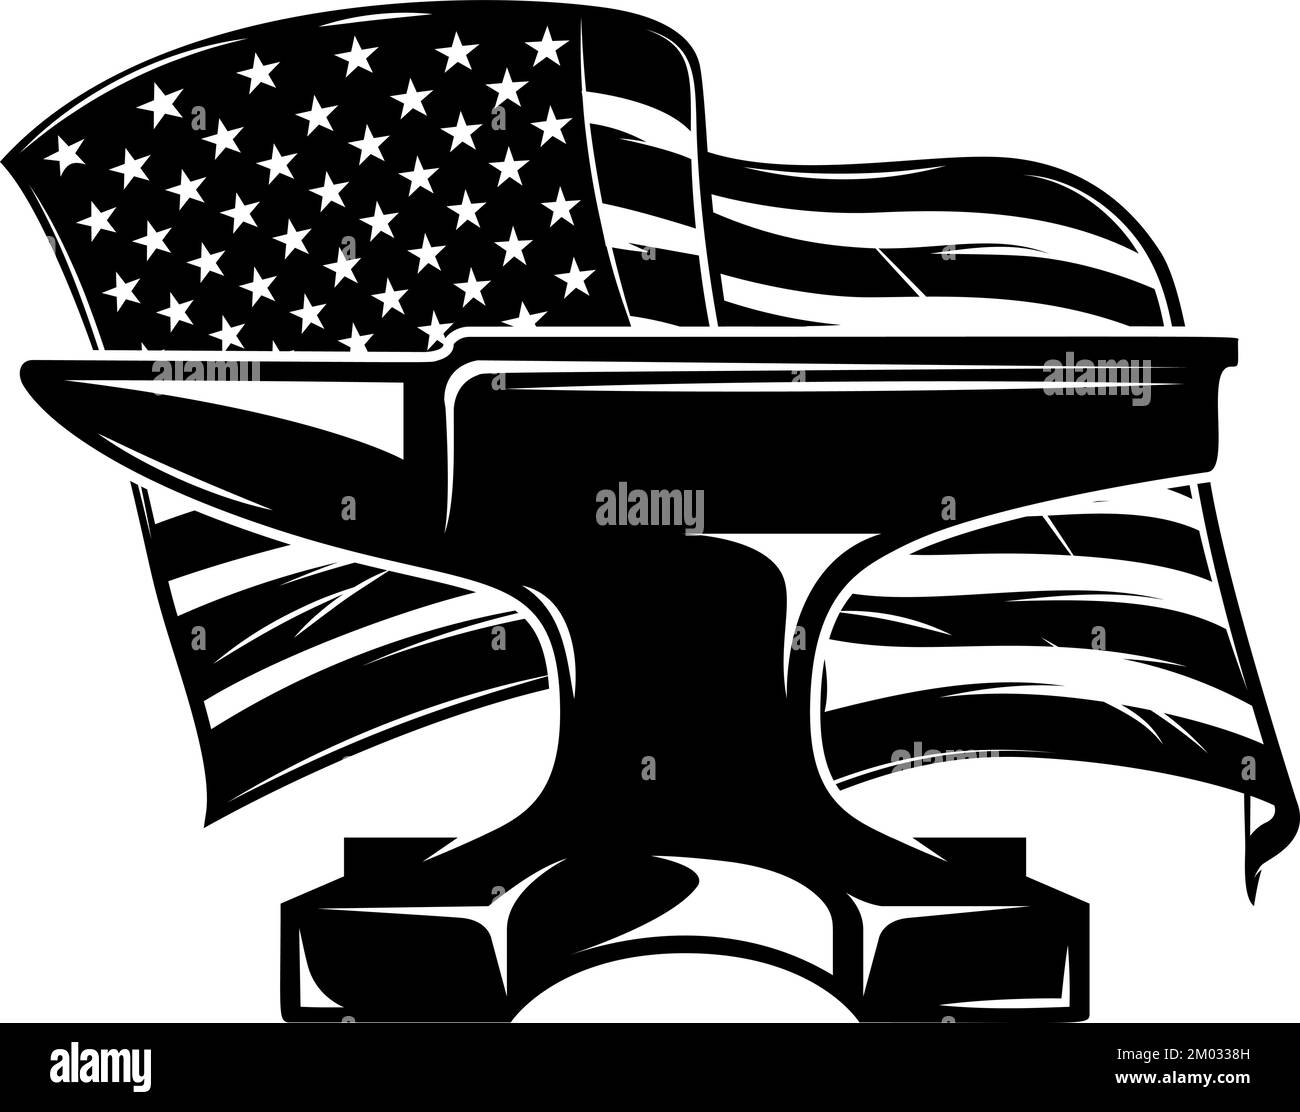 Illustration of blacksmith anvil on american flag background. Design element for poster, card, banner, sign, emblem. Vector illustration Stock Vector